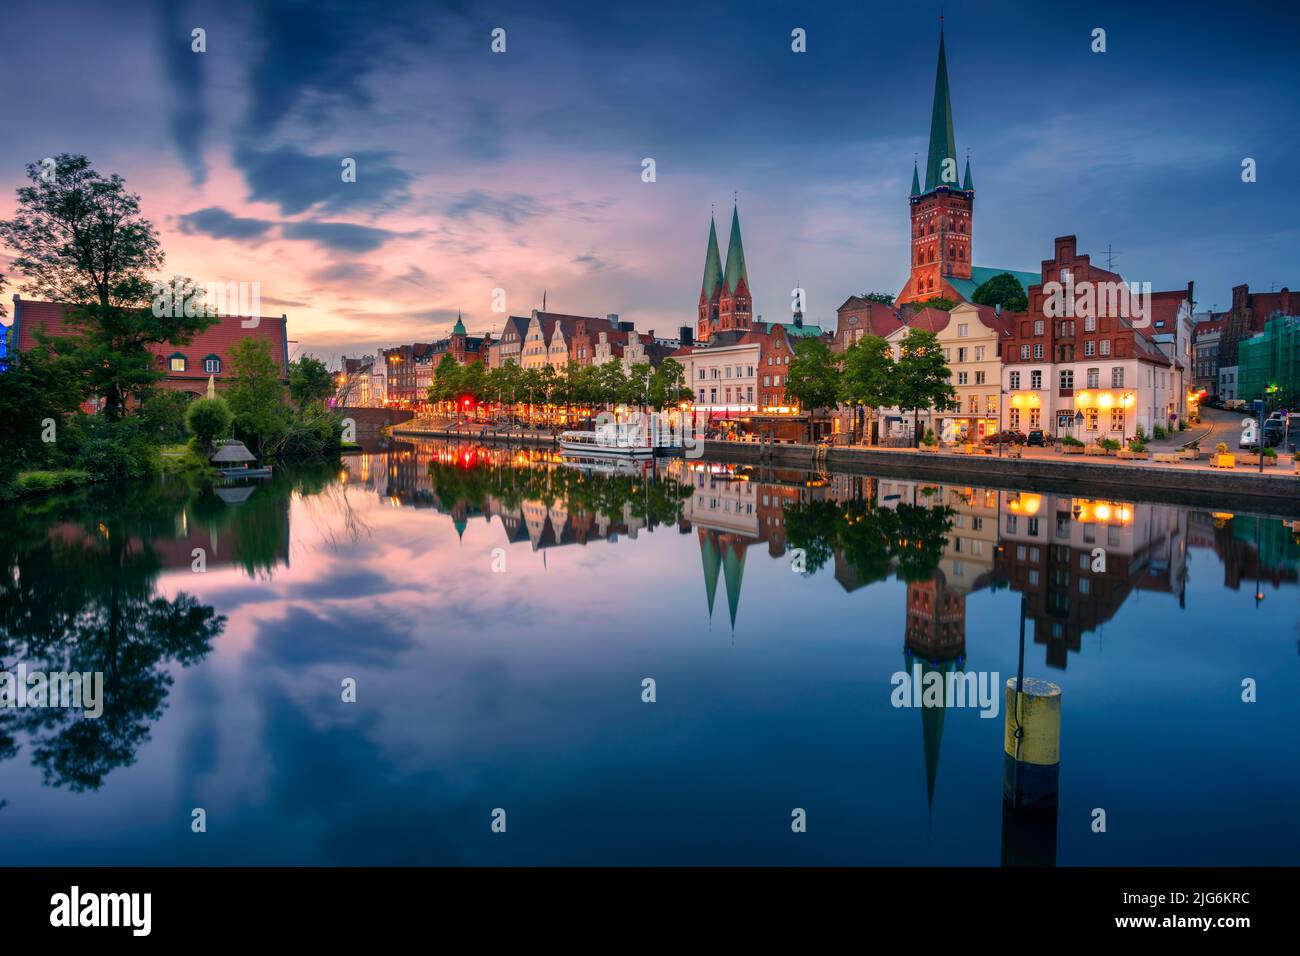 Lubeck, Germania. Immagine del paesaggio urbano di Lubeck lungofiume con riflesso della città nel fiume Trave al tramonto. Foto Stock